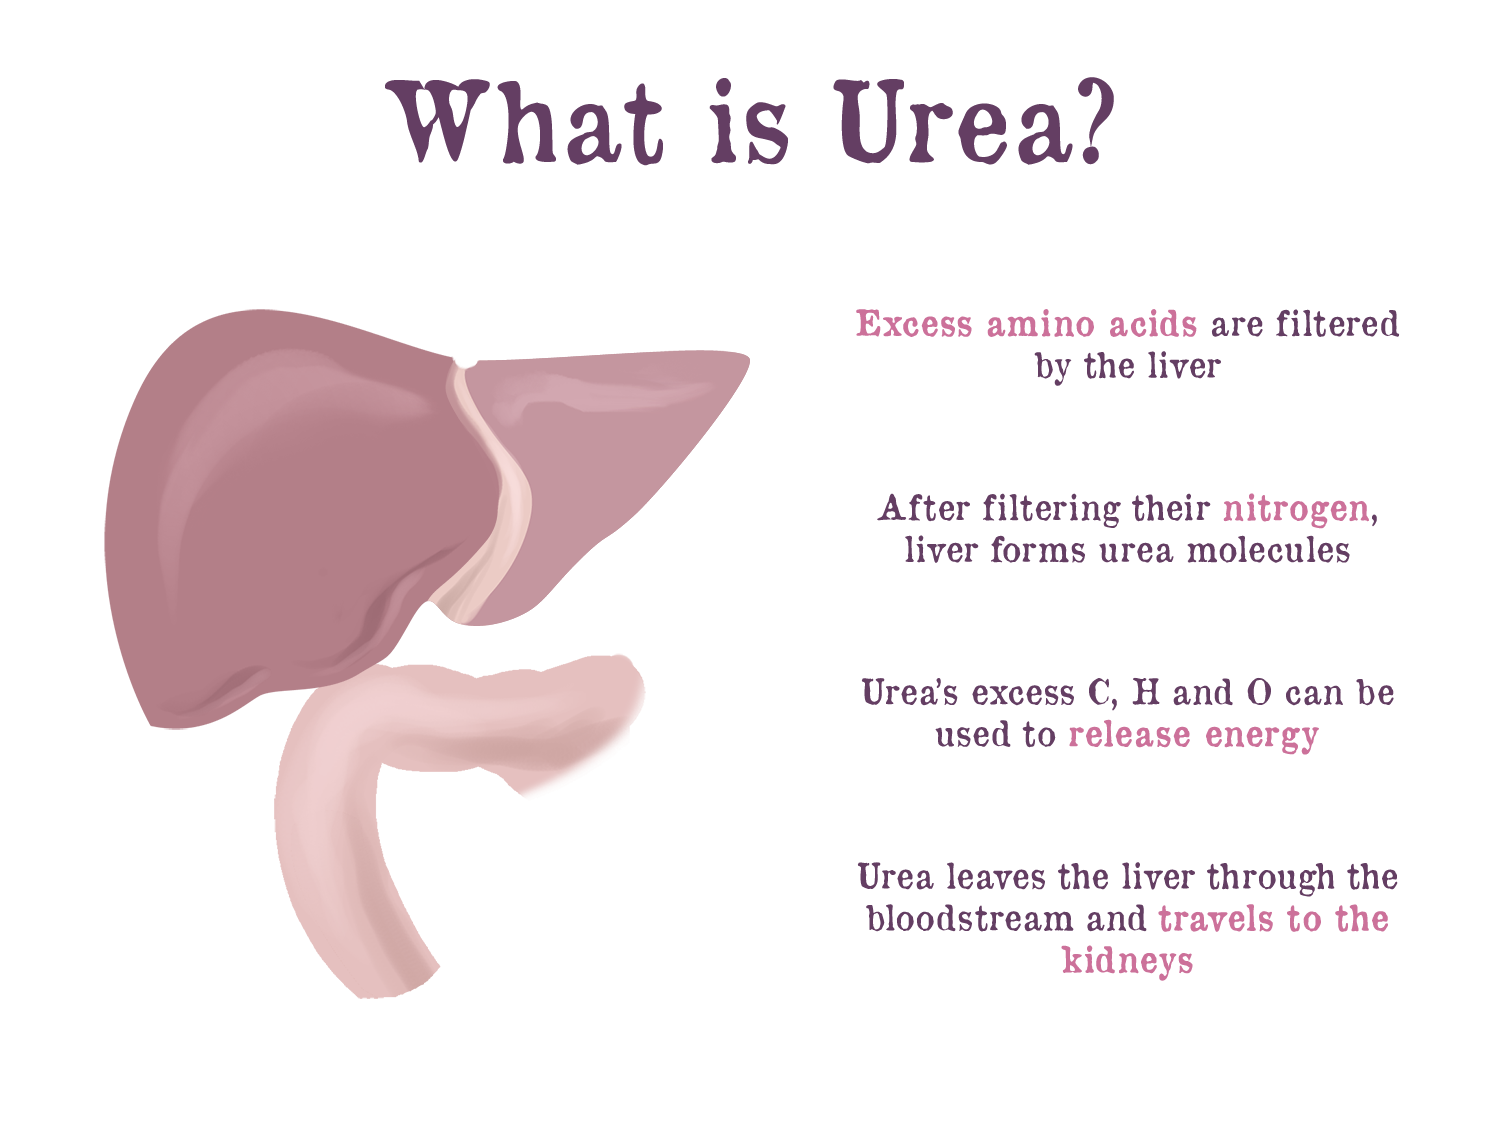 Does Kidney Make Urea